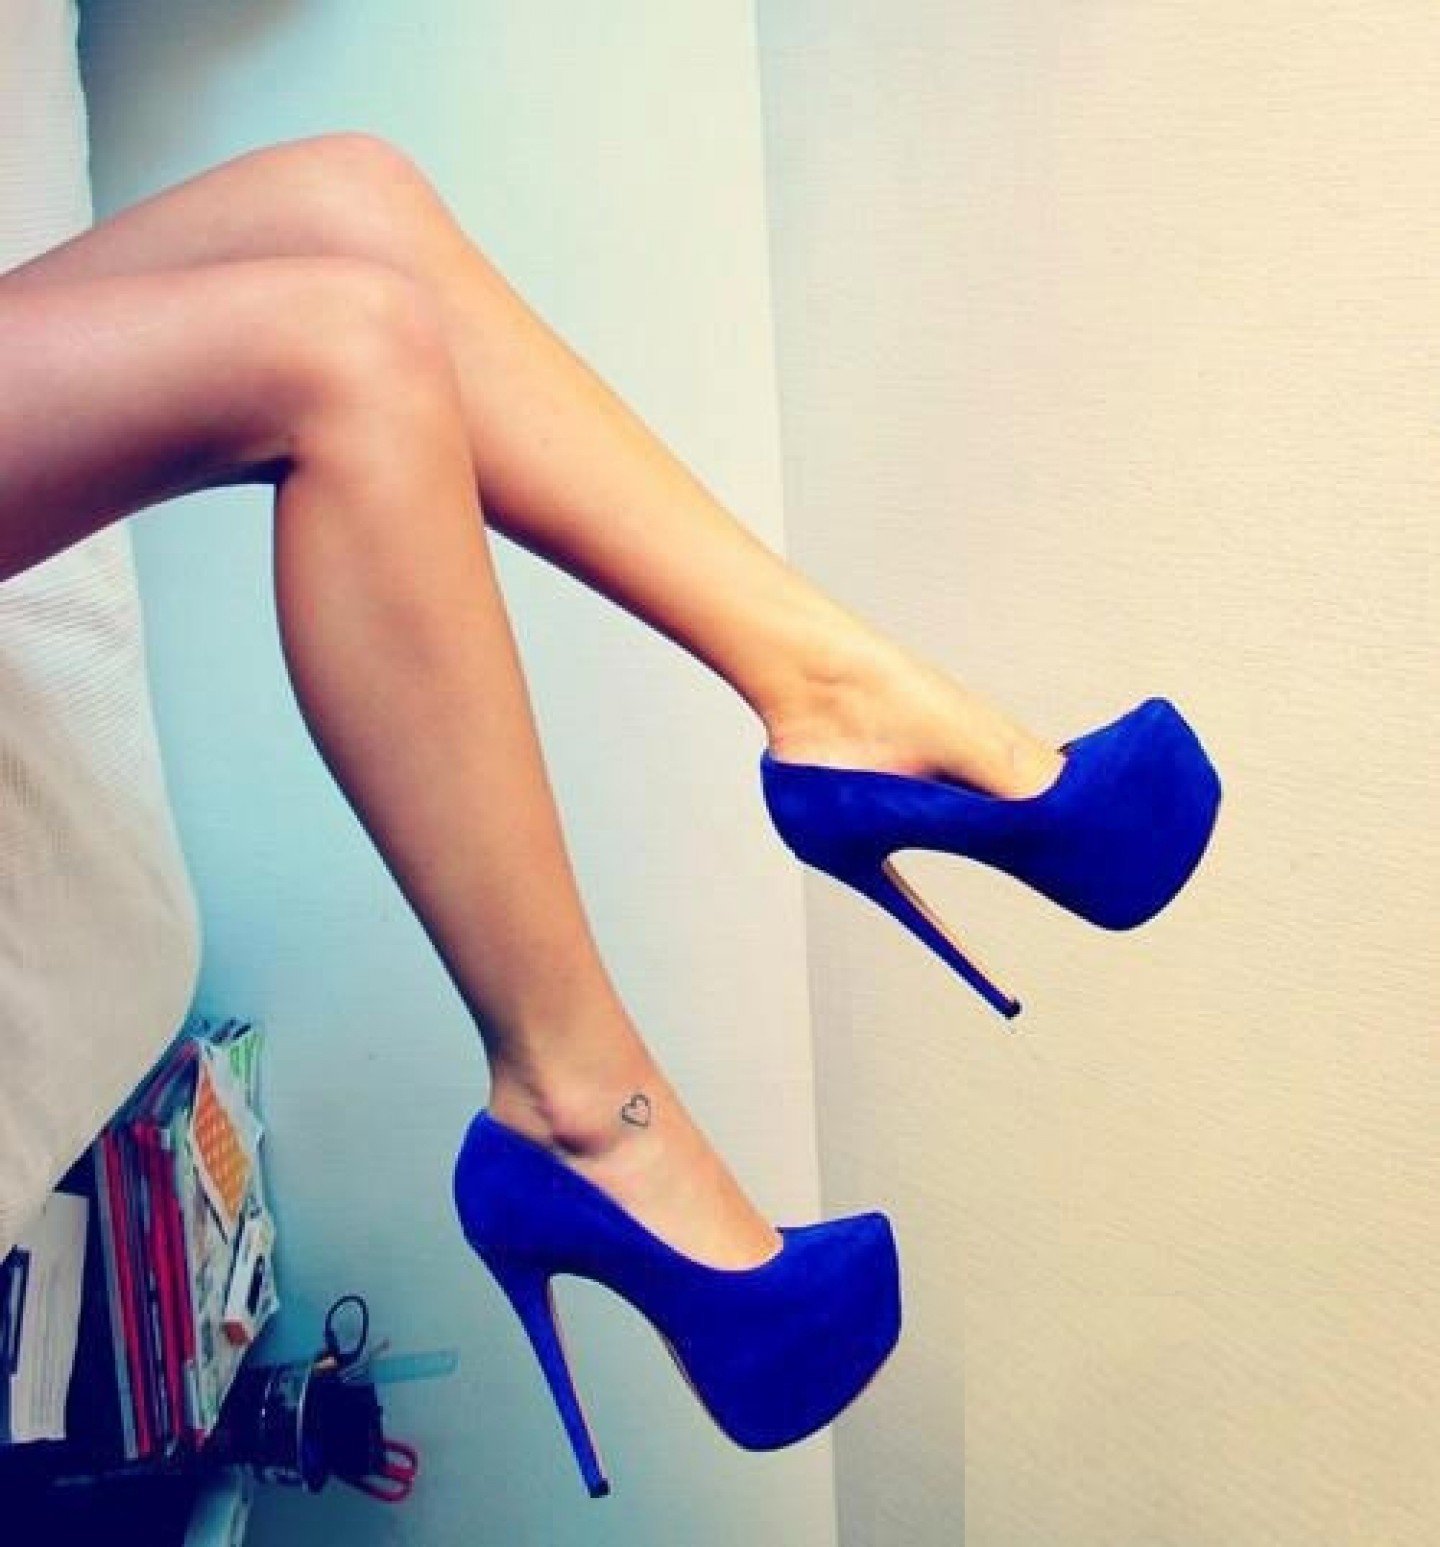 Обнаженная модель в синих туфлях